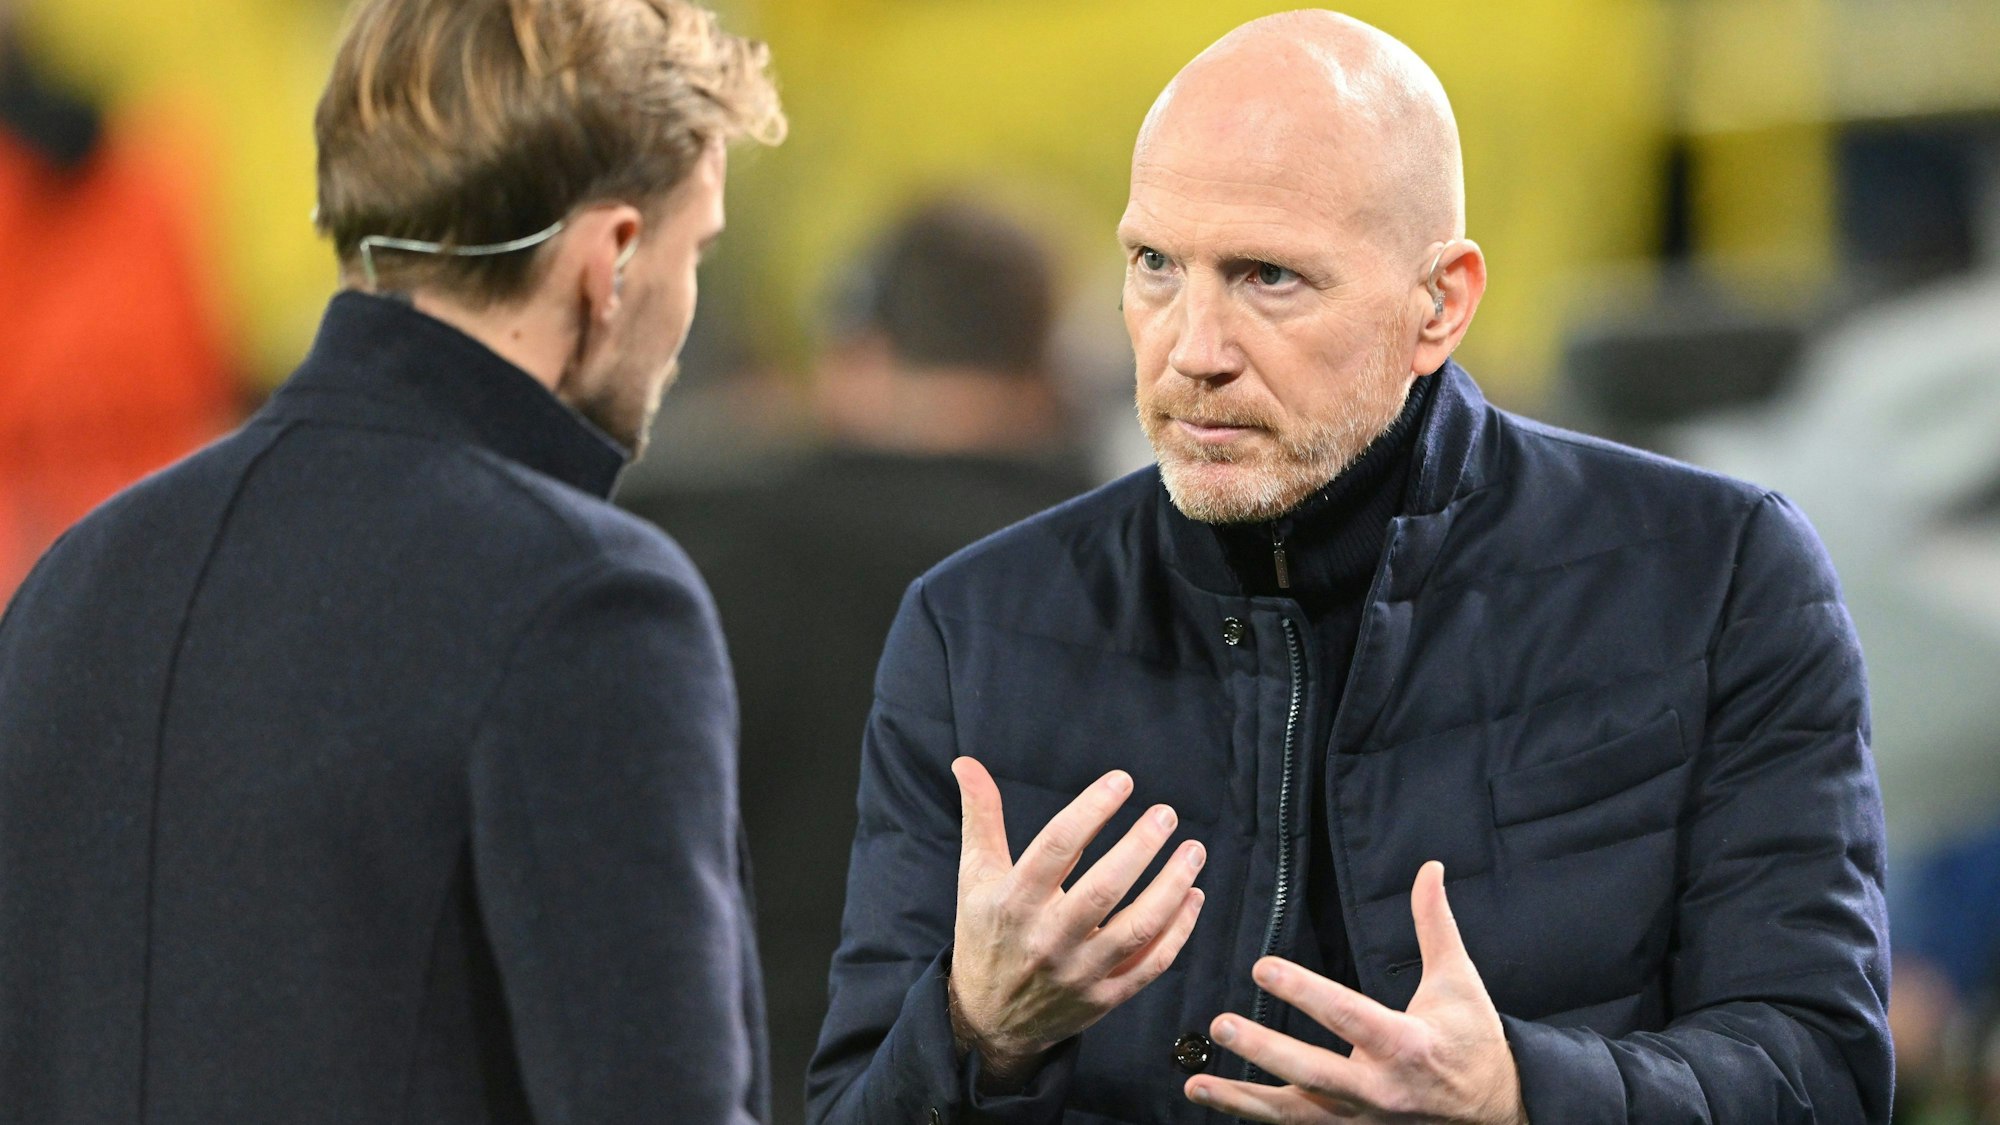 Der ehemalige Dortmunder Spieler Marcel Schmelzer (l.) spricht mit Matthias Sammer, der als externer Berater für Borussia Dortmund arbeitet und bis zum Jahr 2012 Sportdirektor beim Deutschen Fußball-Bund war.